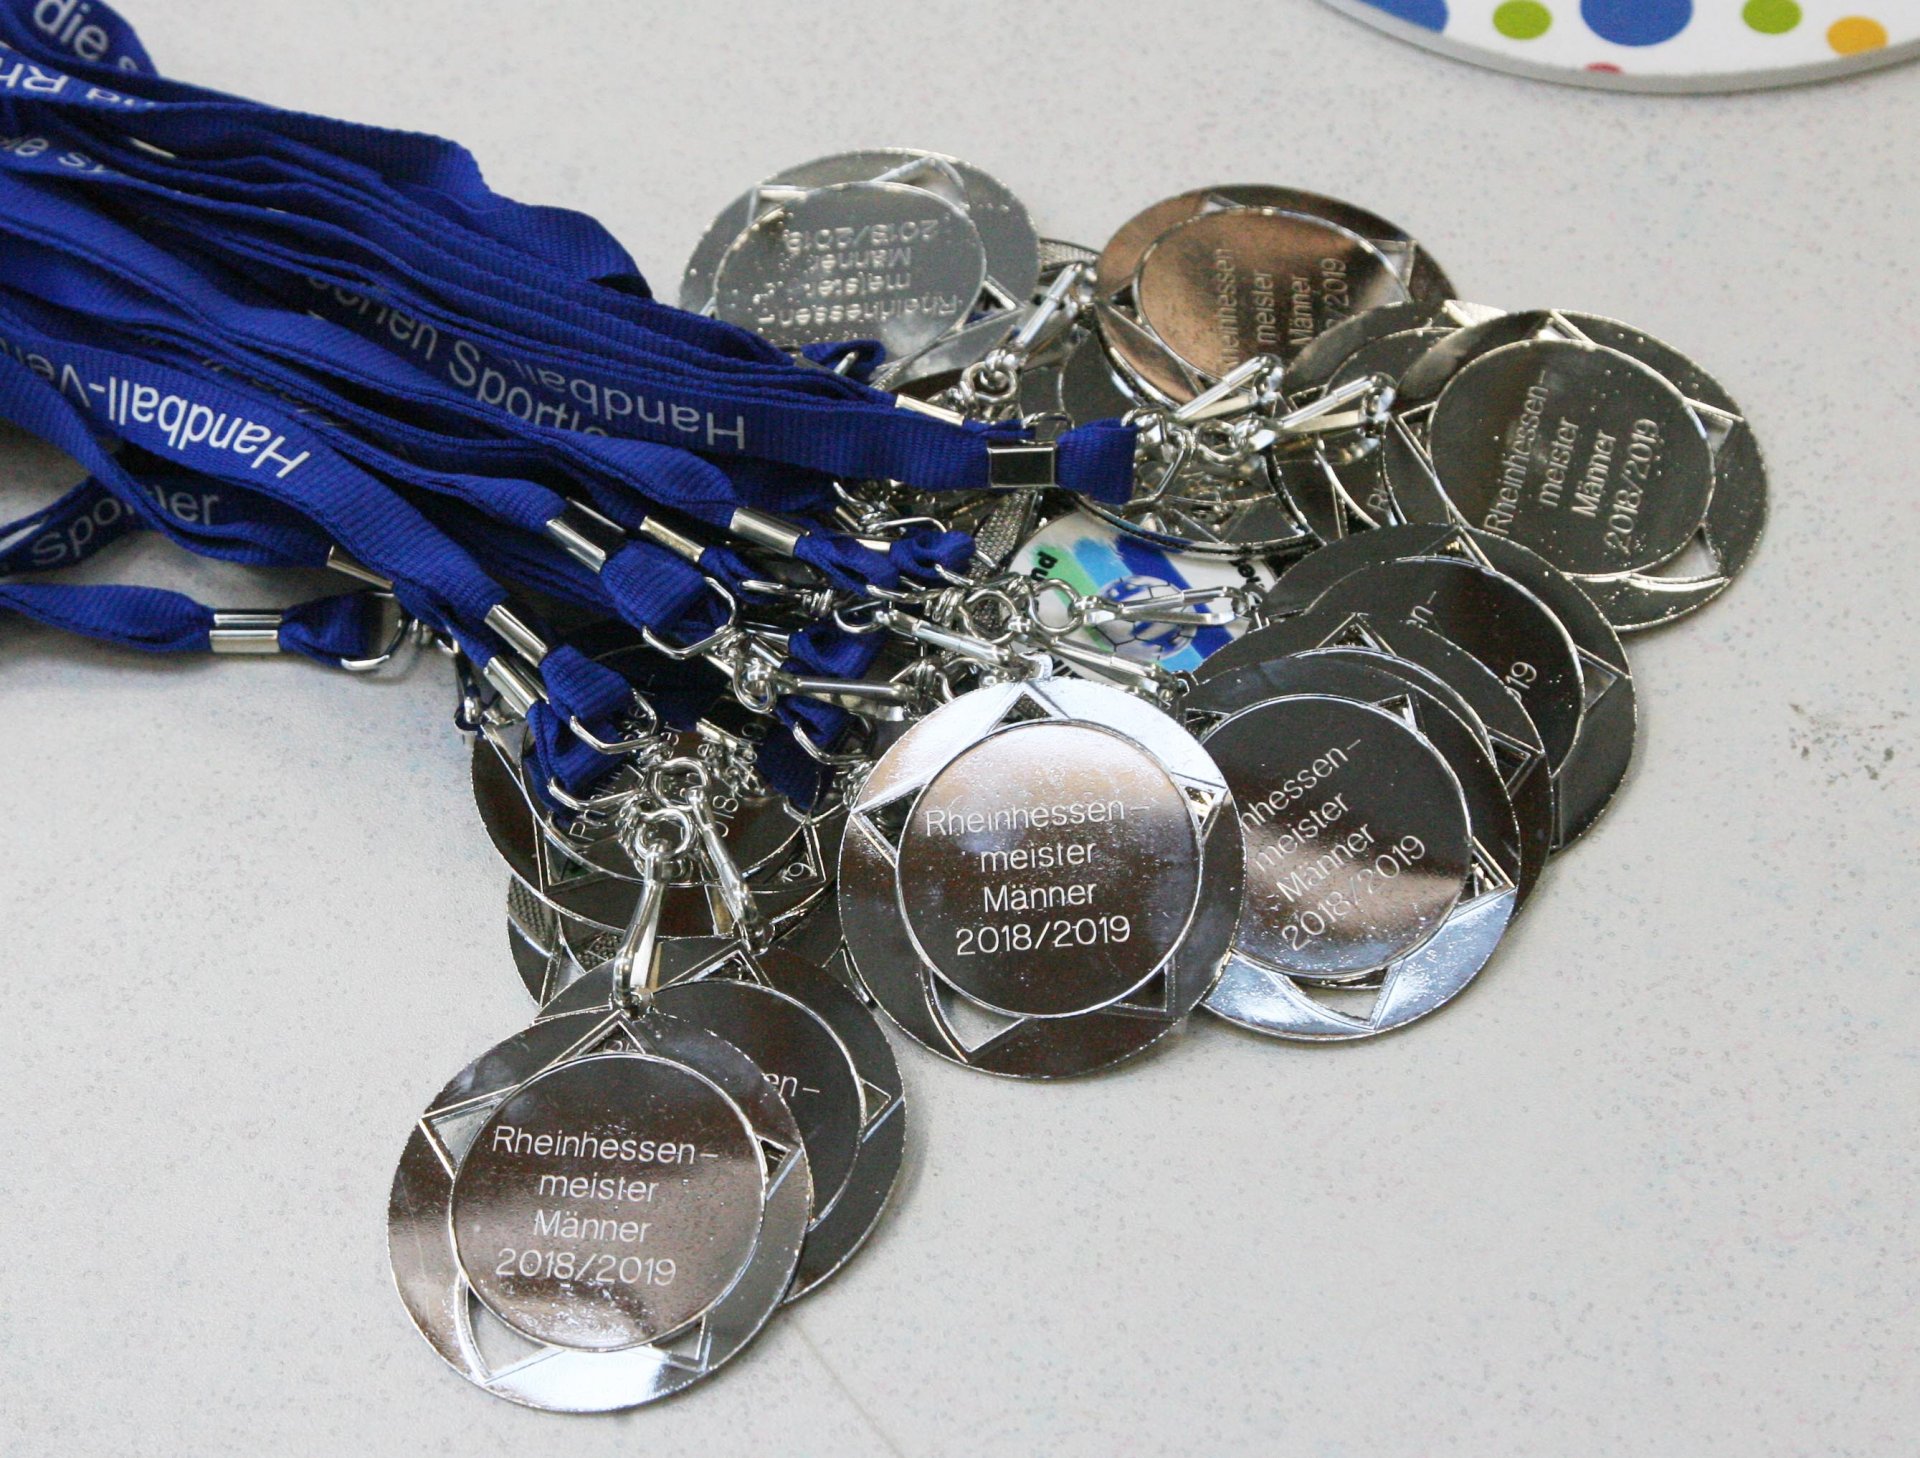 Für die Sieger hielt der HV Rheinhessen diese Medaillen bereit.